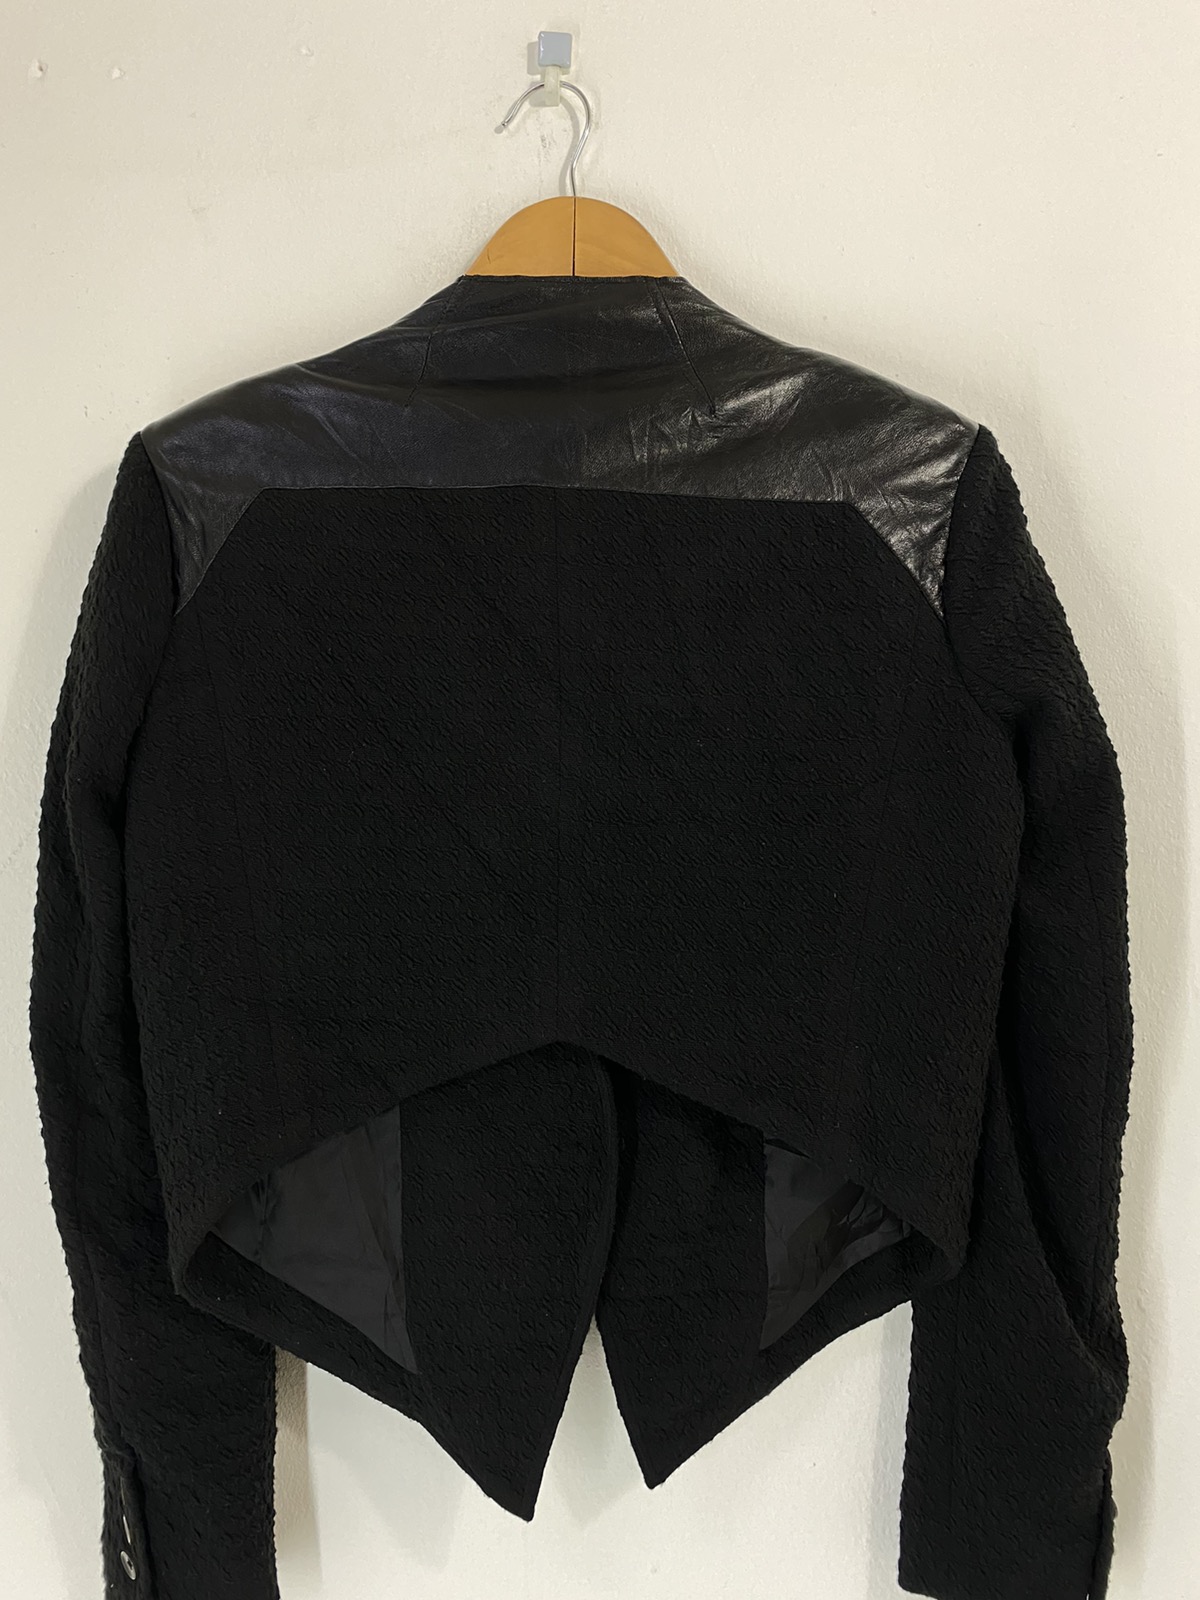 Helmut lang hybrid Leather Jacket Rare Design - 9